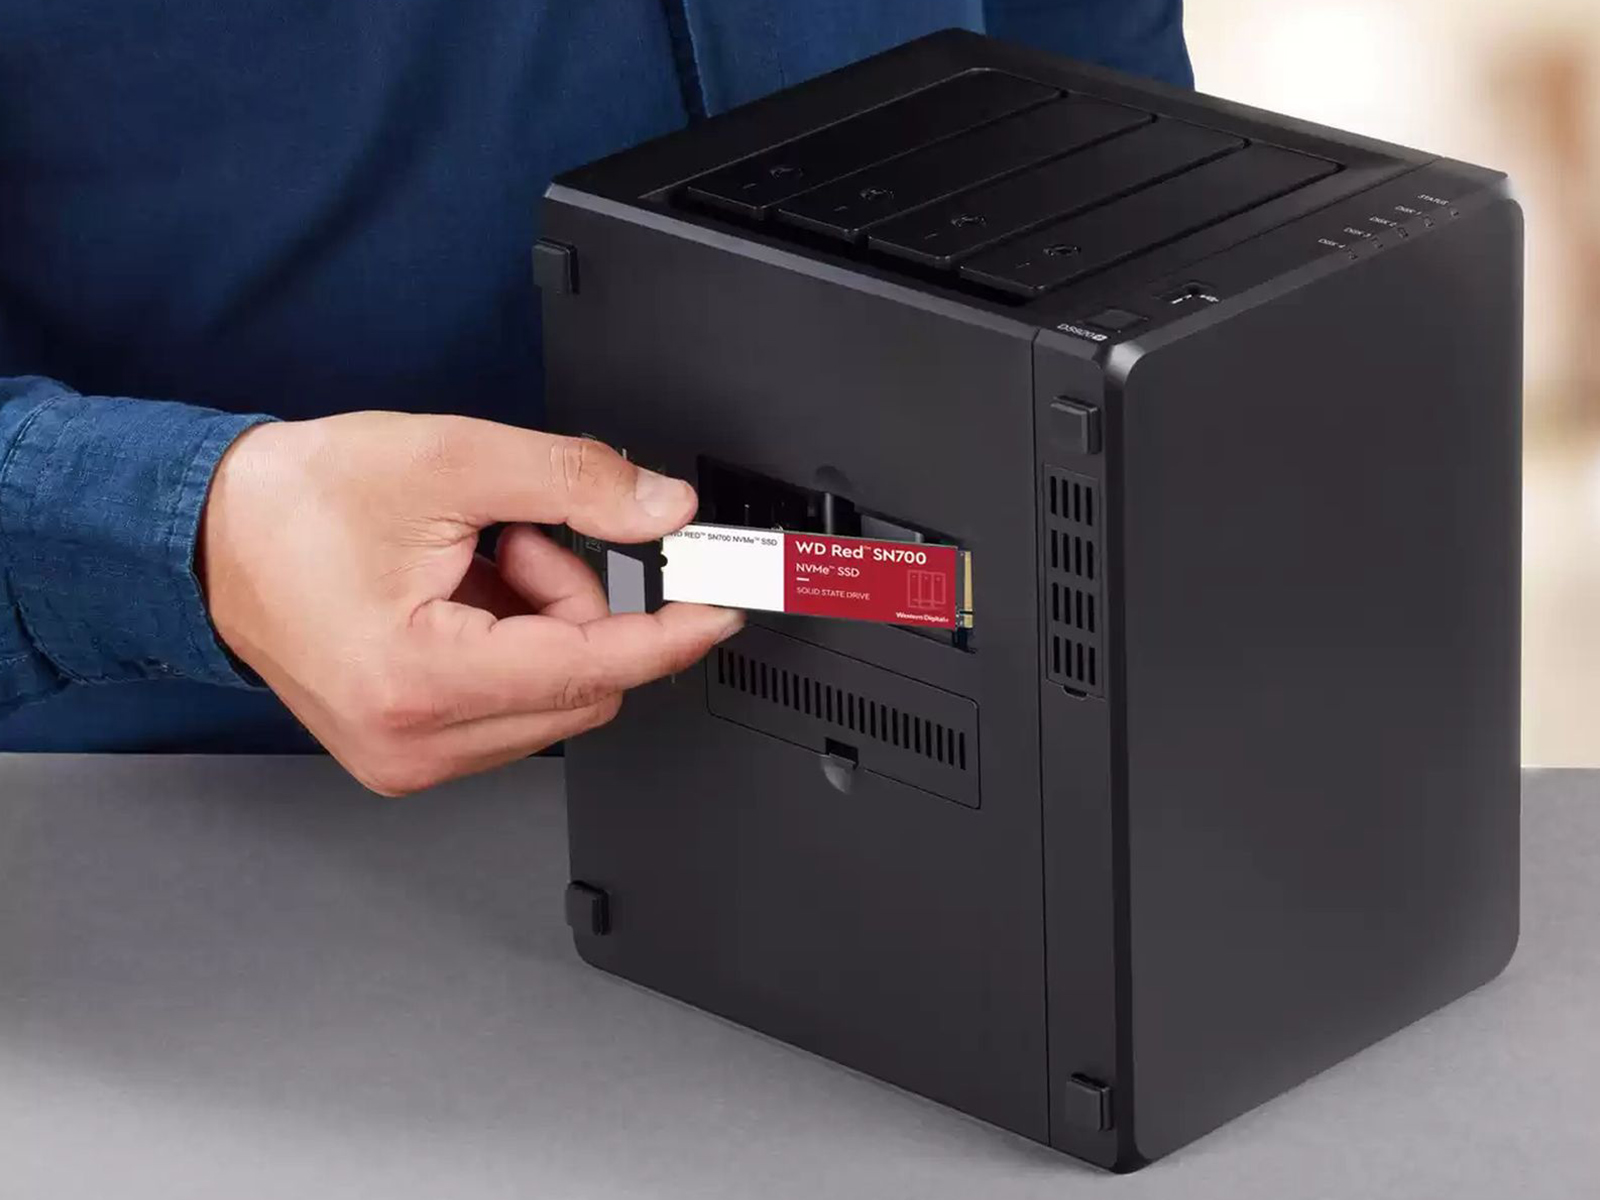 Recensione WD RED SN700, disco SSD eclettico e velocissimo